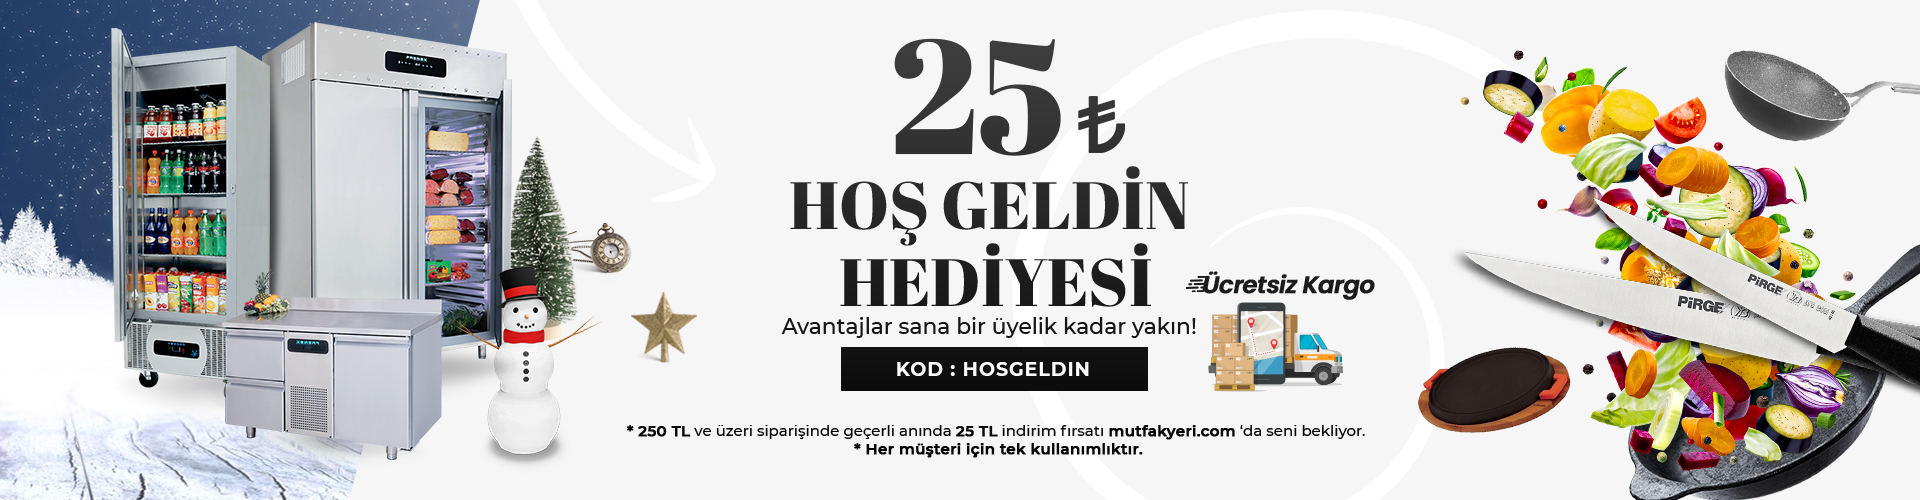 25 TL HOŞ GELDİN HEDİYESİ Mutfakyeri.com 